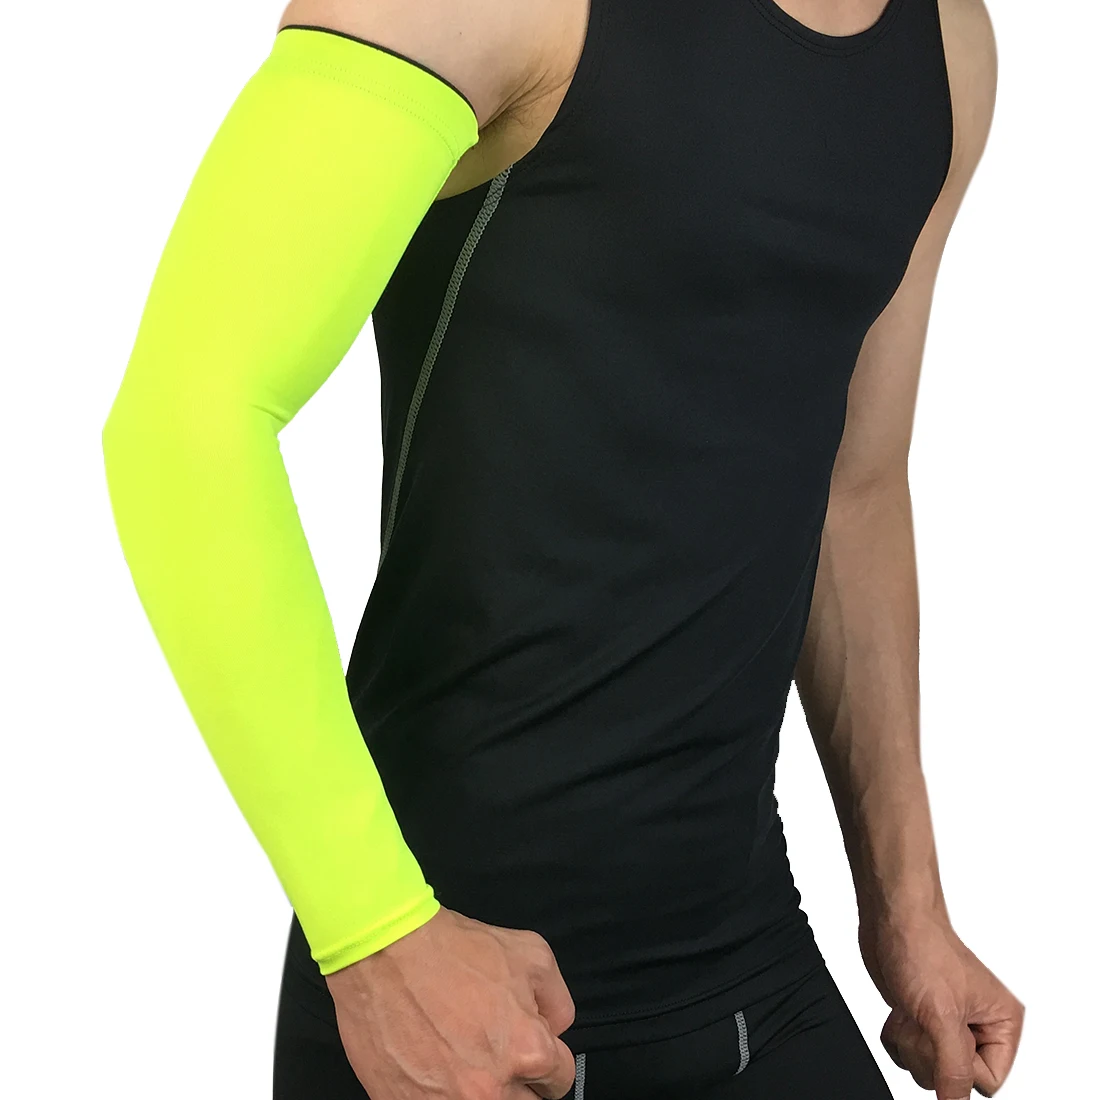 Дышащие быстросохнущие гетры для рук с защитой от ультрафиолета для бега, баскетбола, налокотника, фитнеса, нарукавники, спортивные гетры для рук, синие, 1 шт